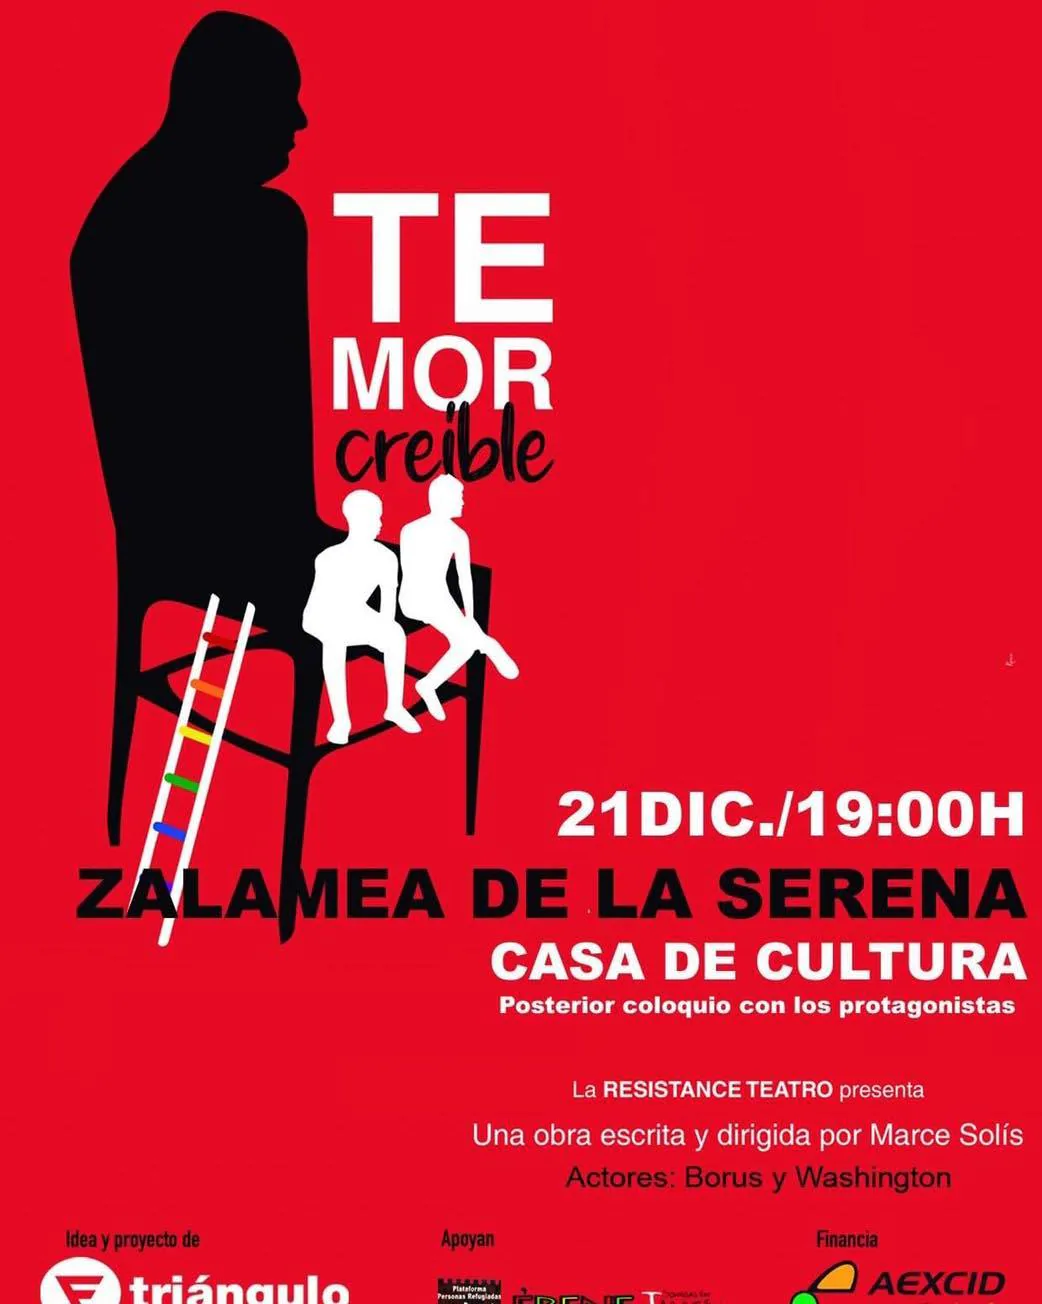 El Centro Cultural acoge mañana la representación del teatro 'Temor Creíble'